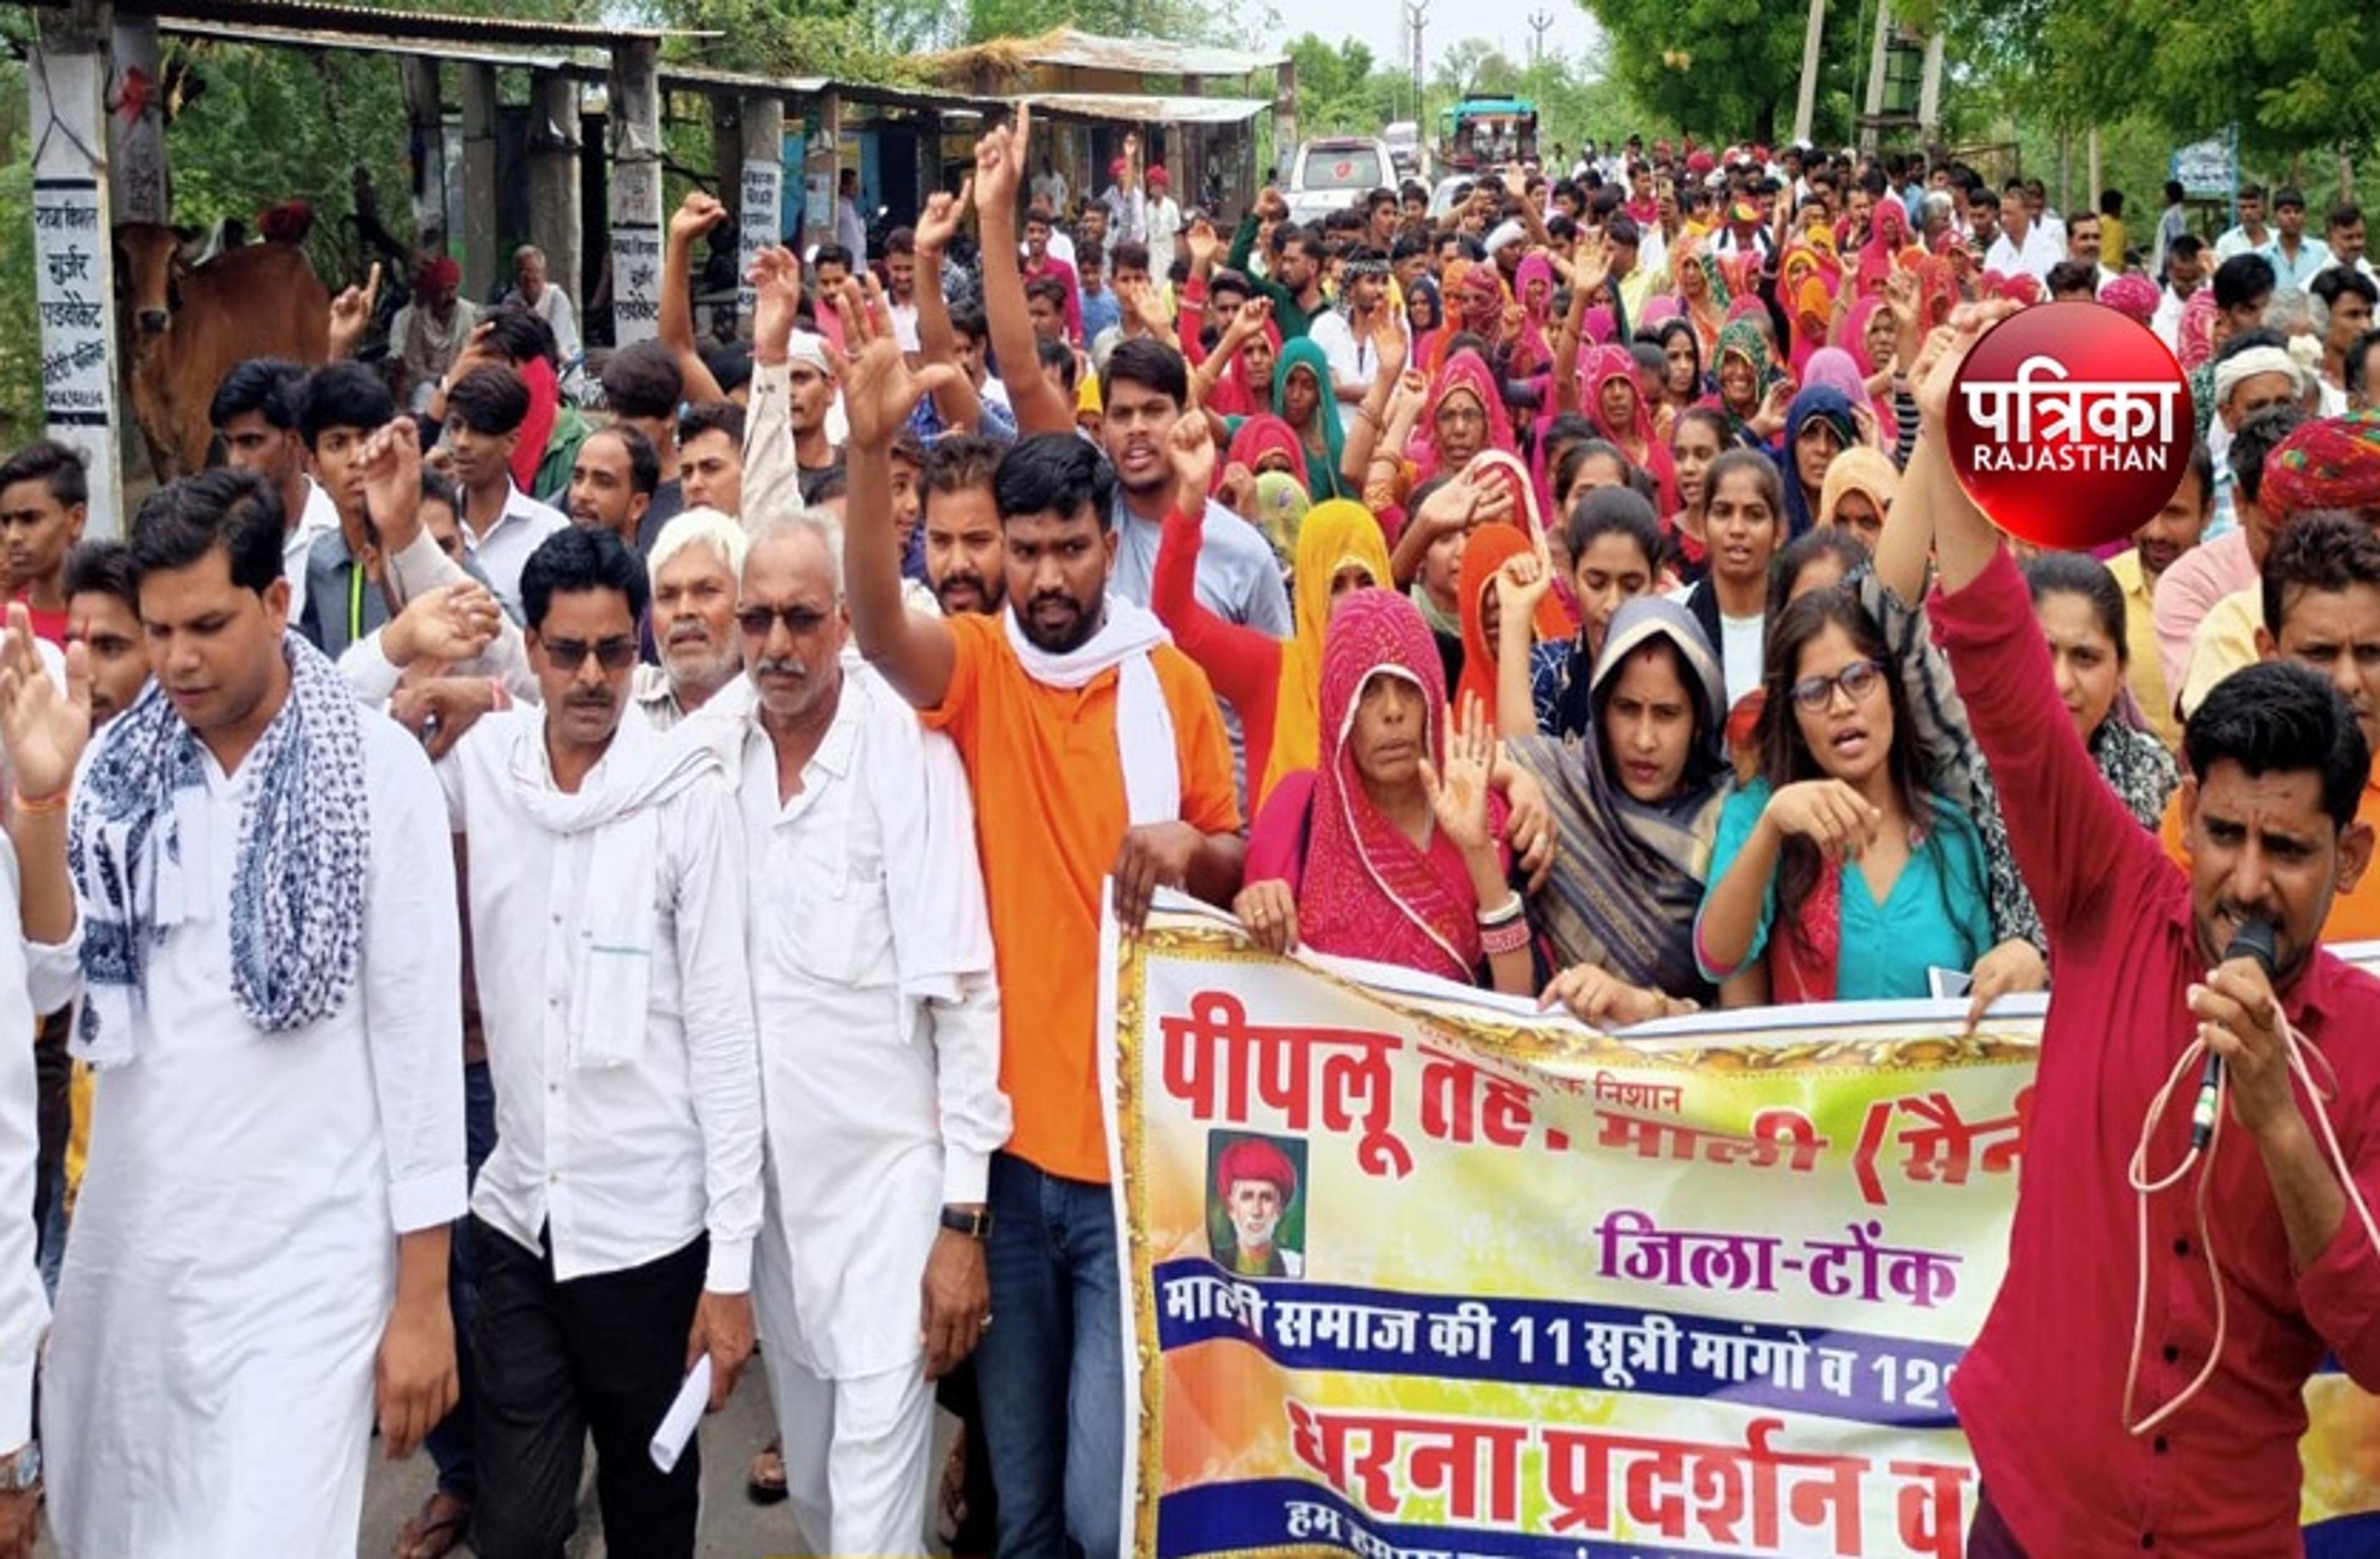 Rajasthan News: माली-सैनी समाज के आंदोलन के चलते आज भी इन क्षेत्रों में नहीं
चलेगा इंटरनेट, आंदोलन छठे दिन भी जारी